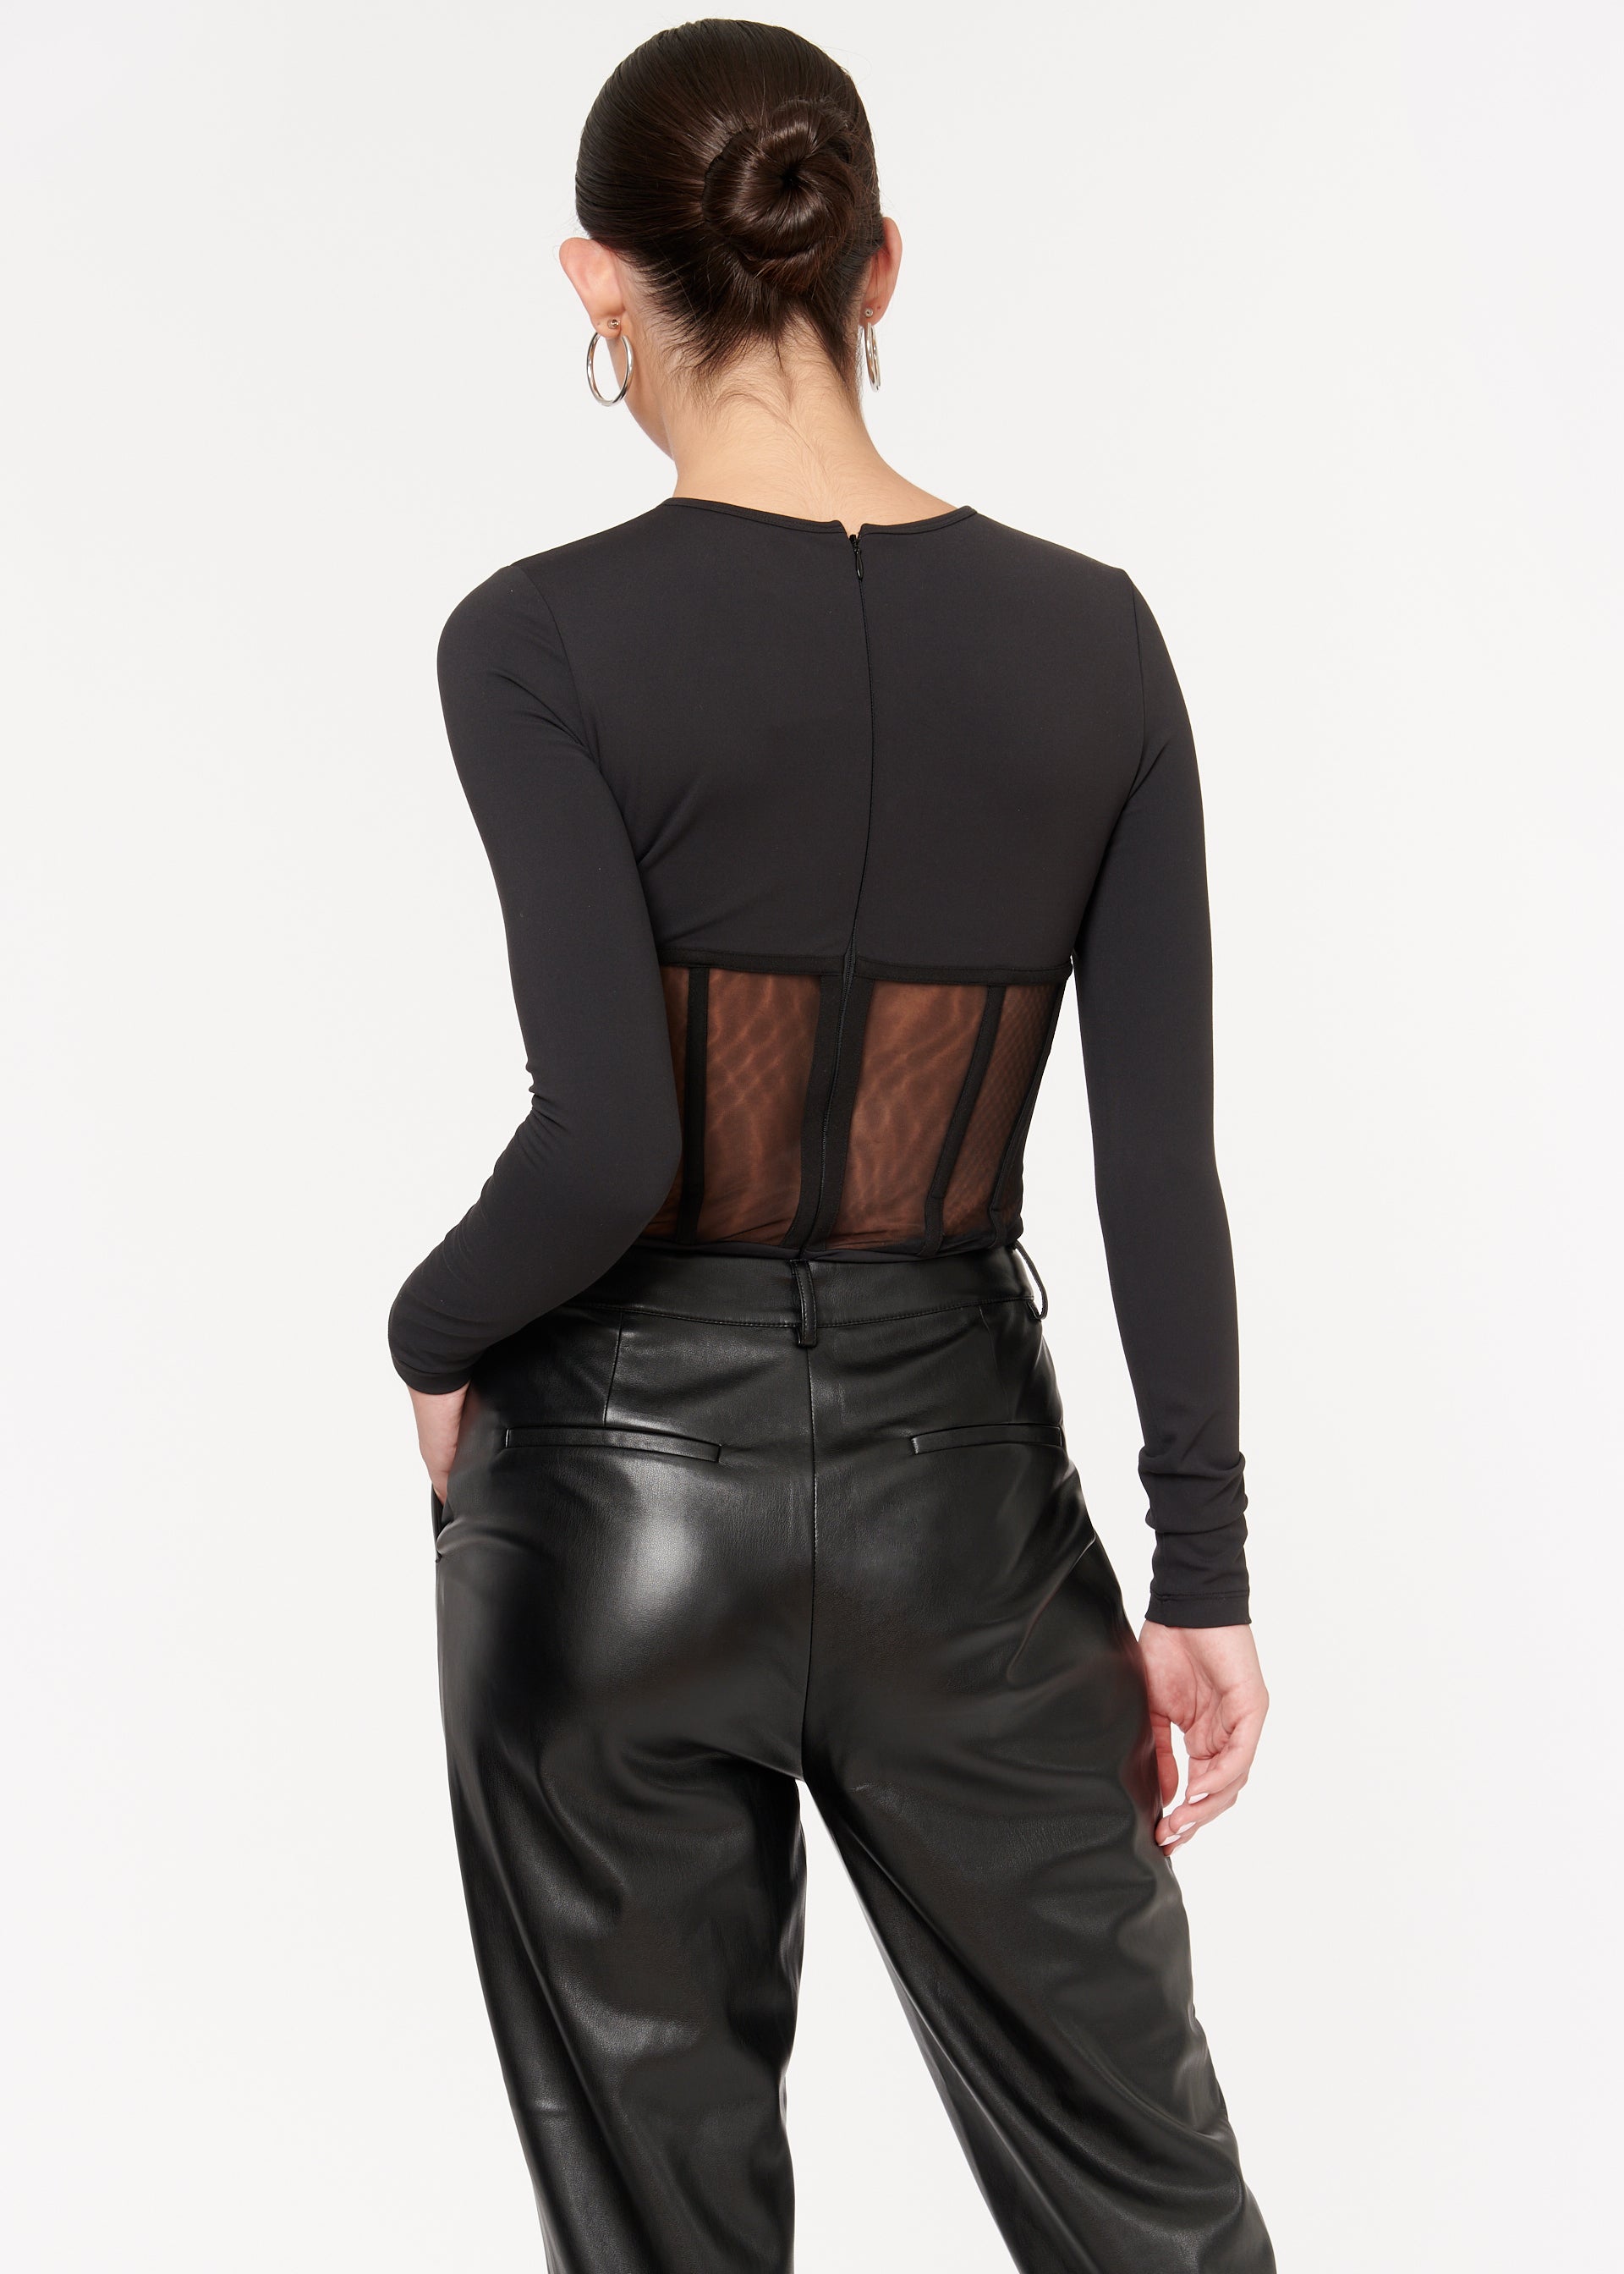 CAMI NYC  Yecca Bodysuit – Half & Half Boutique